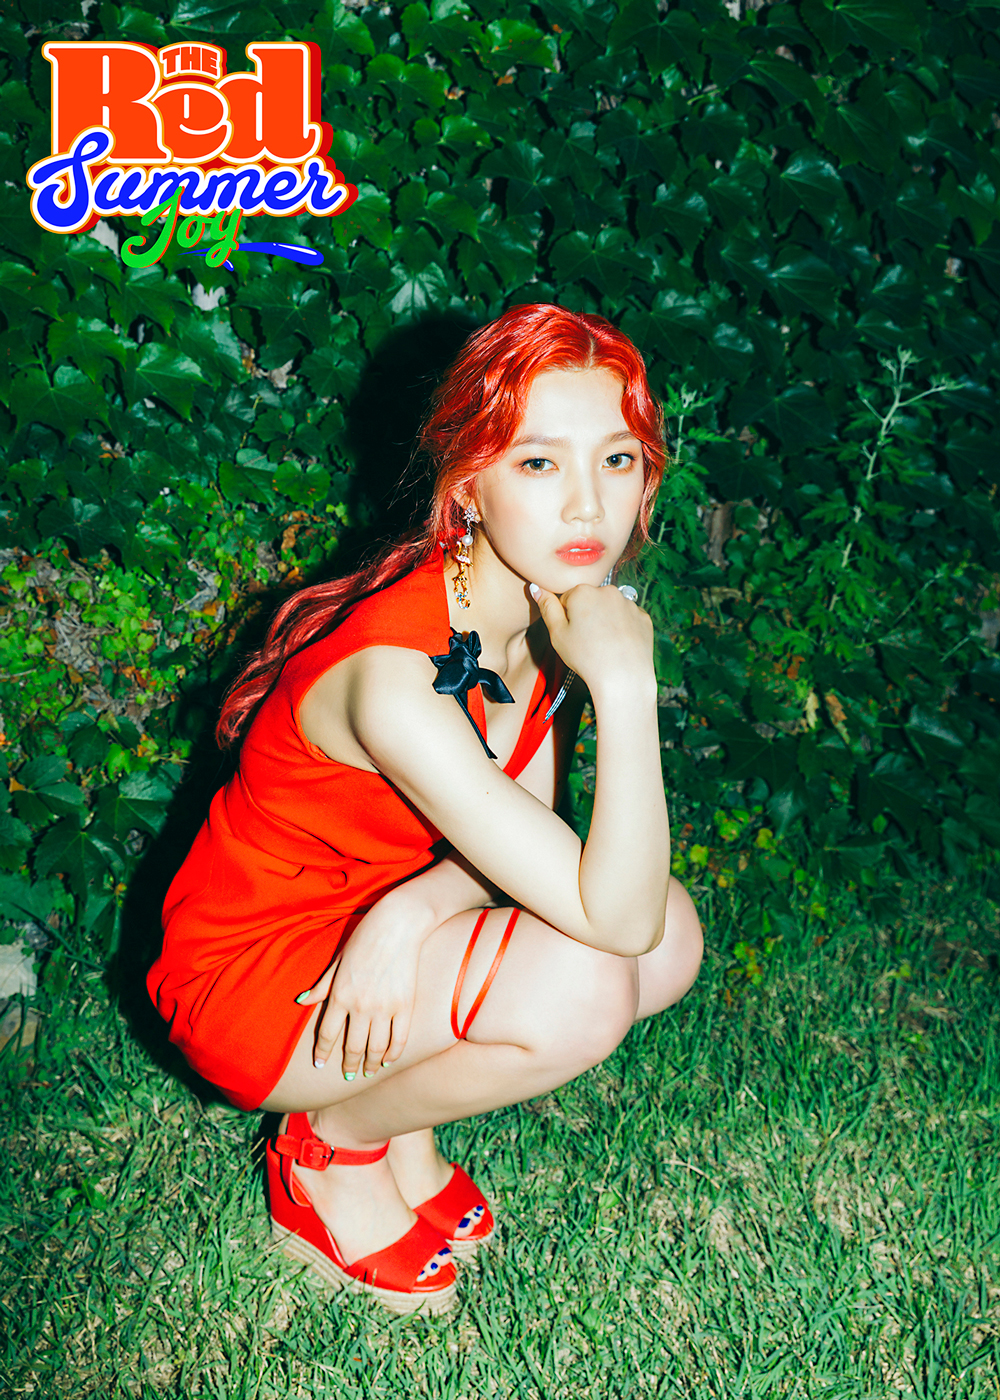 [FULL HQ] Red Velvet members teaser images and tracklist of 